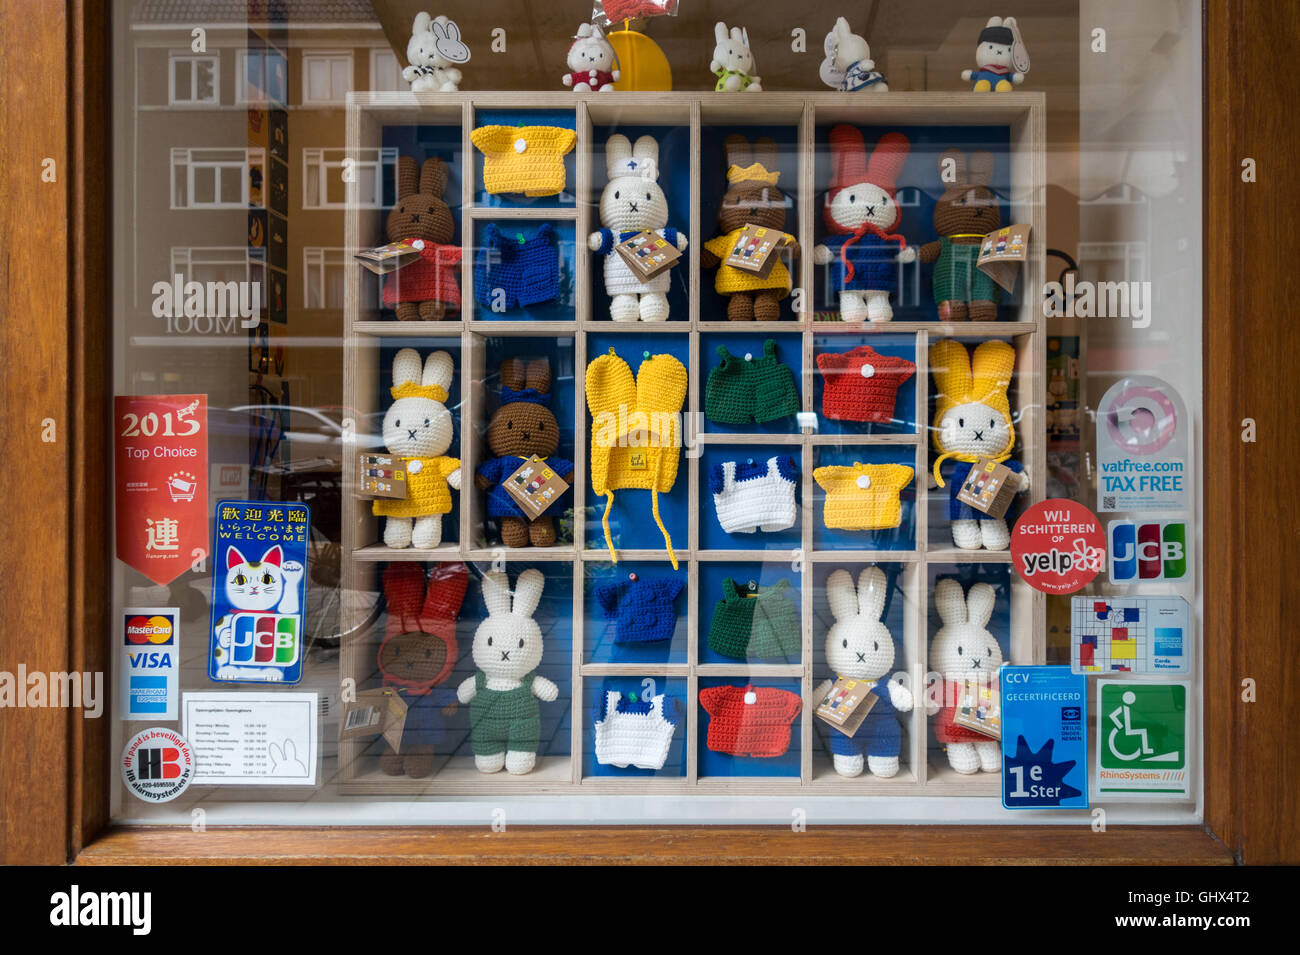 Shop Miffy Miffy officiel ; Store à Amsterdam, aux Pays-Bas. Néerlandais : Nijntje Winkel Banque D'Images